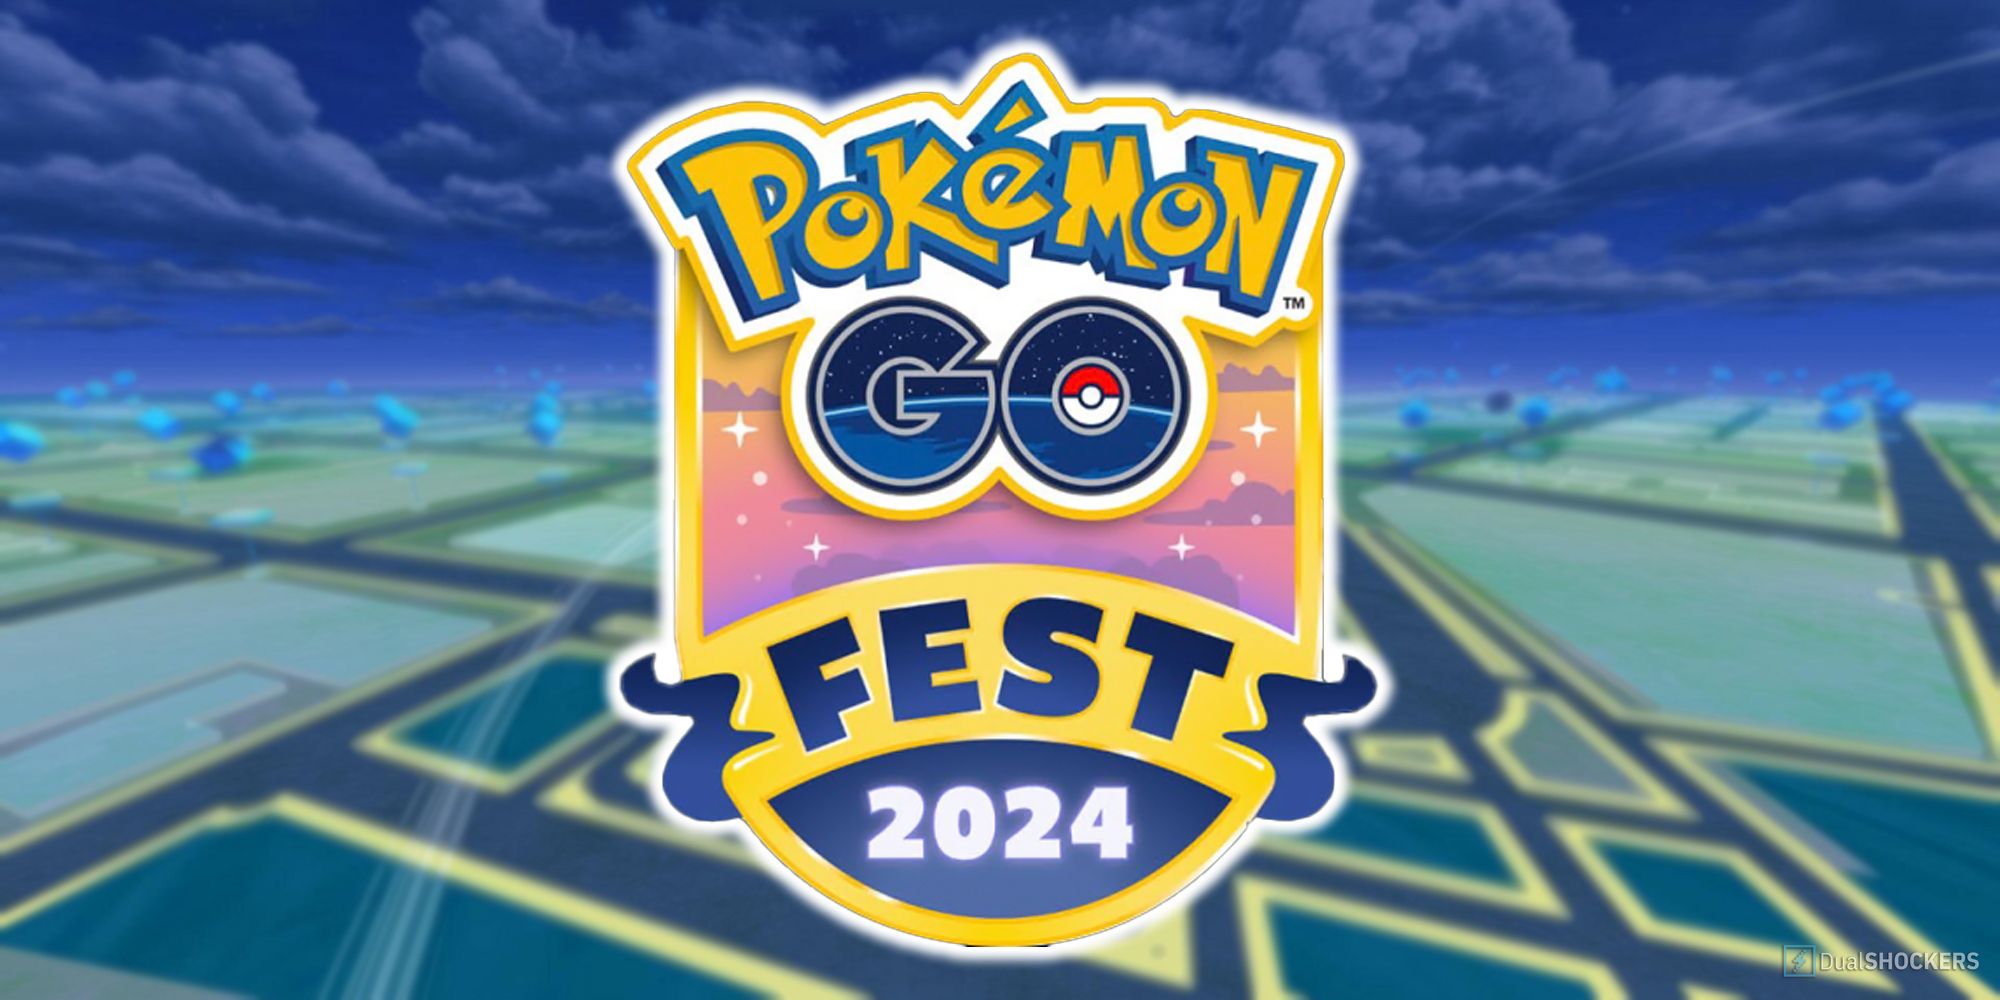 Pokemon GO Fest 2024 logo.